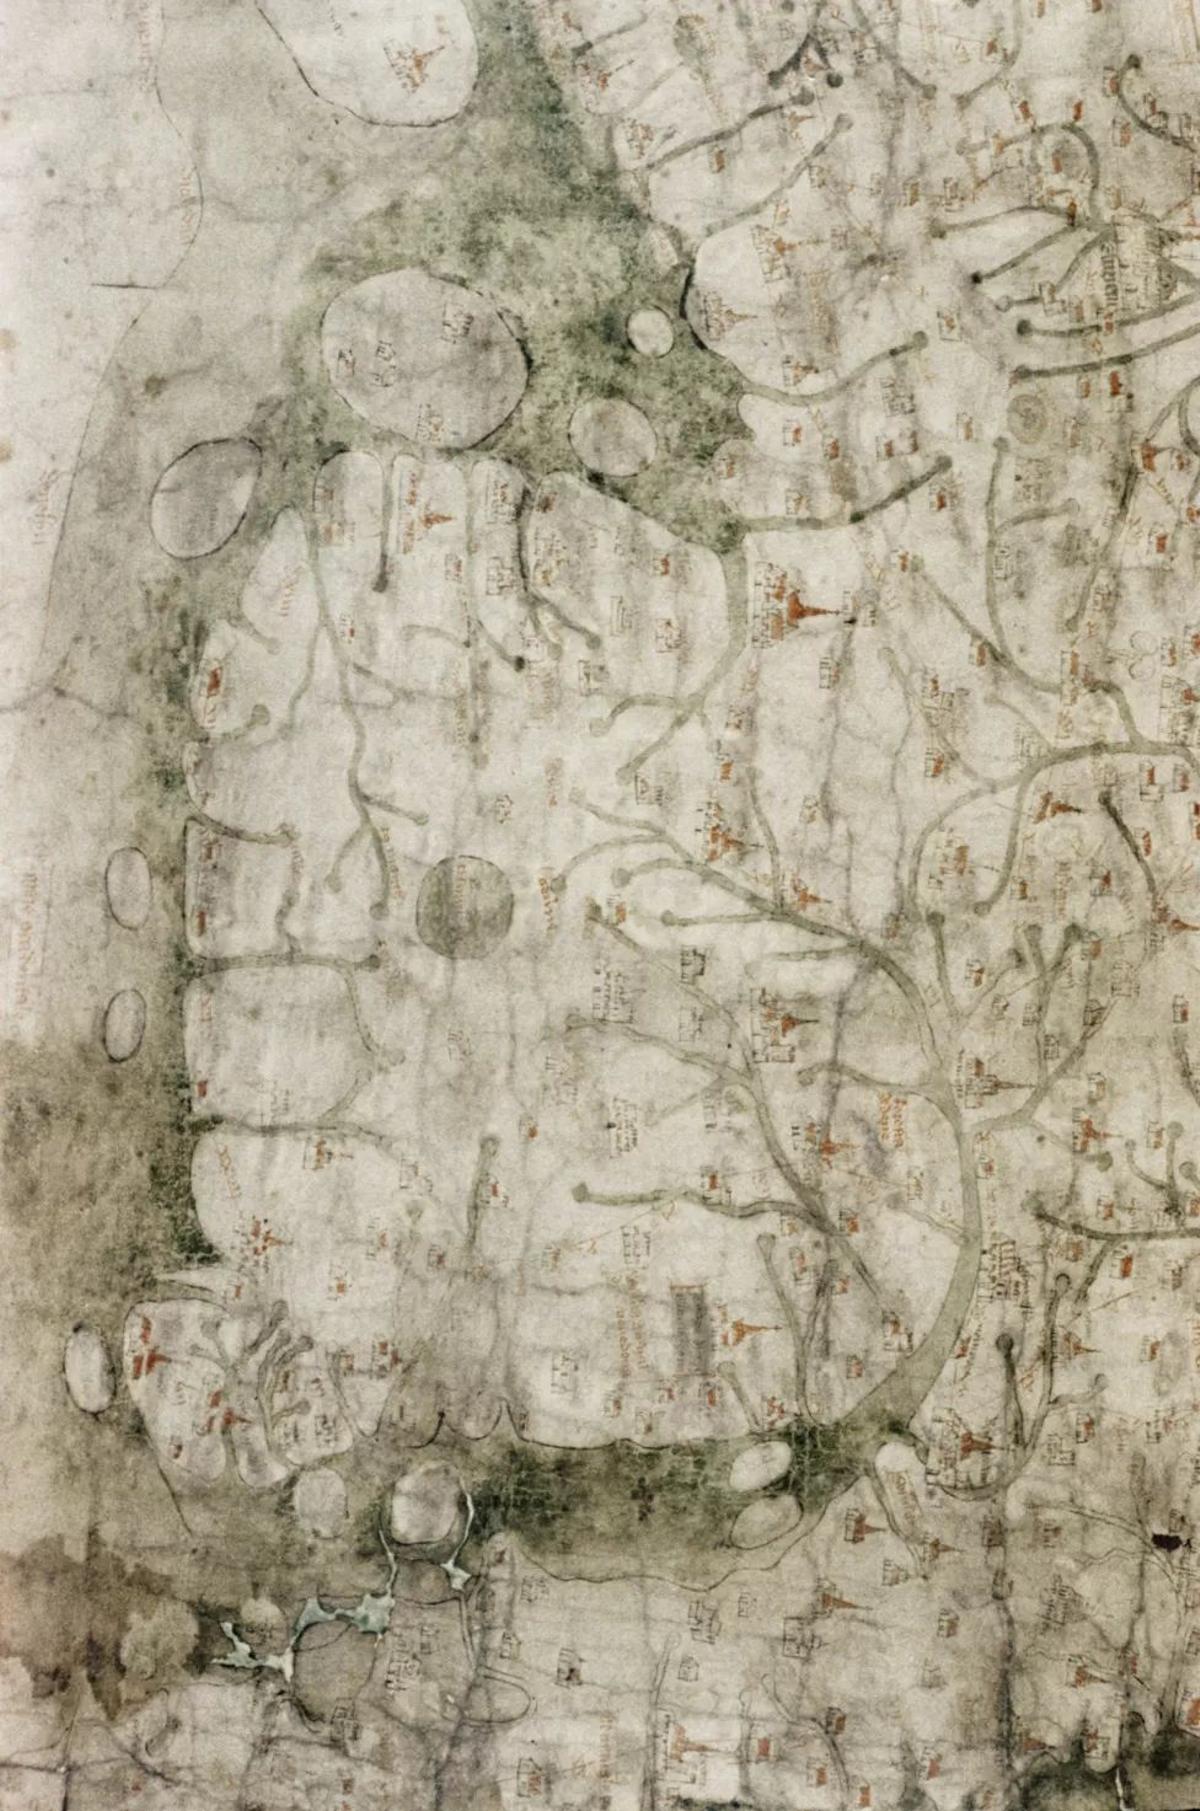 El mapa del siglo XIII muestra un Gales medieval con dos grandes islas frente a la costa oeste que no existen en la actualidad.